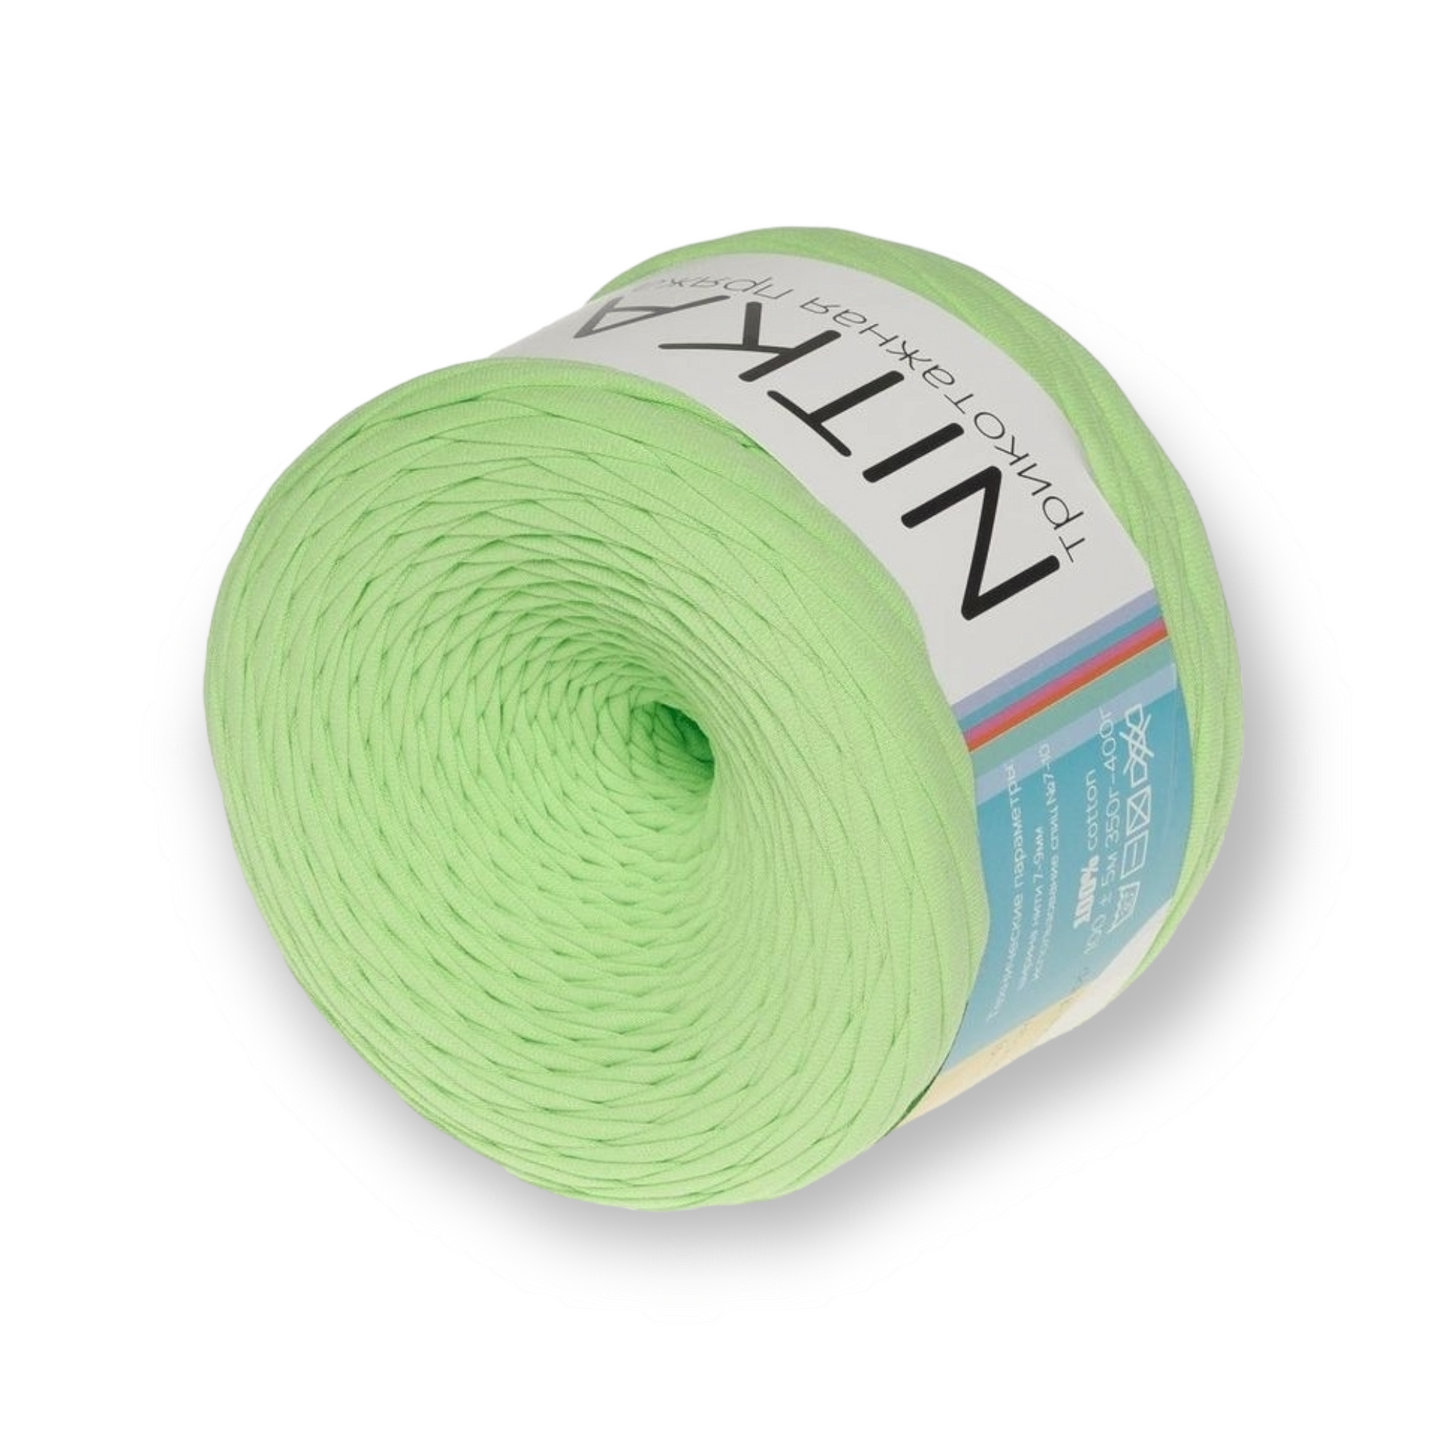 Fil dégradé de couleur NITKA fil textile de Russie 100% coton 1A qualité 100 mètres rouleau toujours largeur constante jersey ruban jersey fil